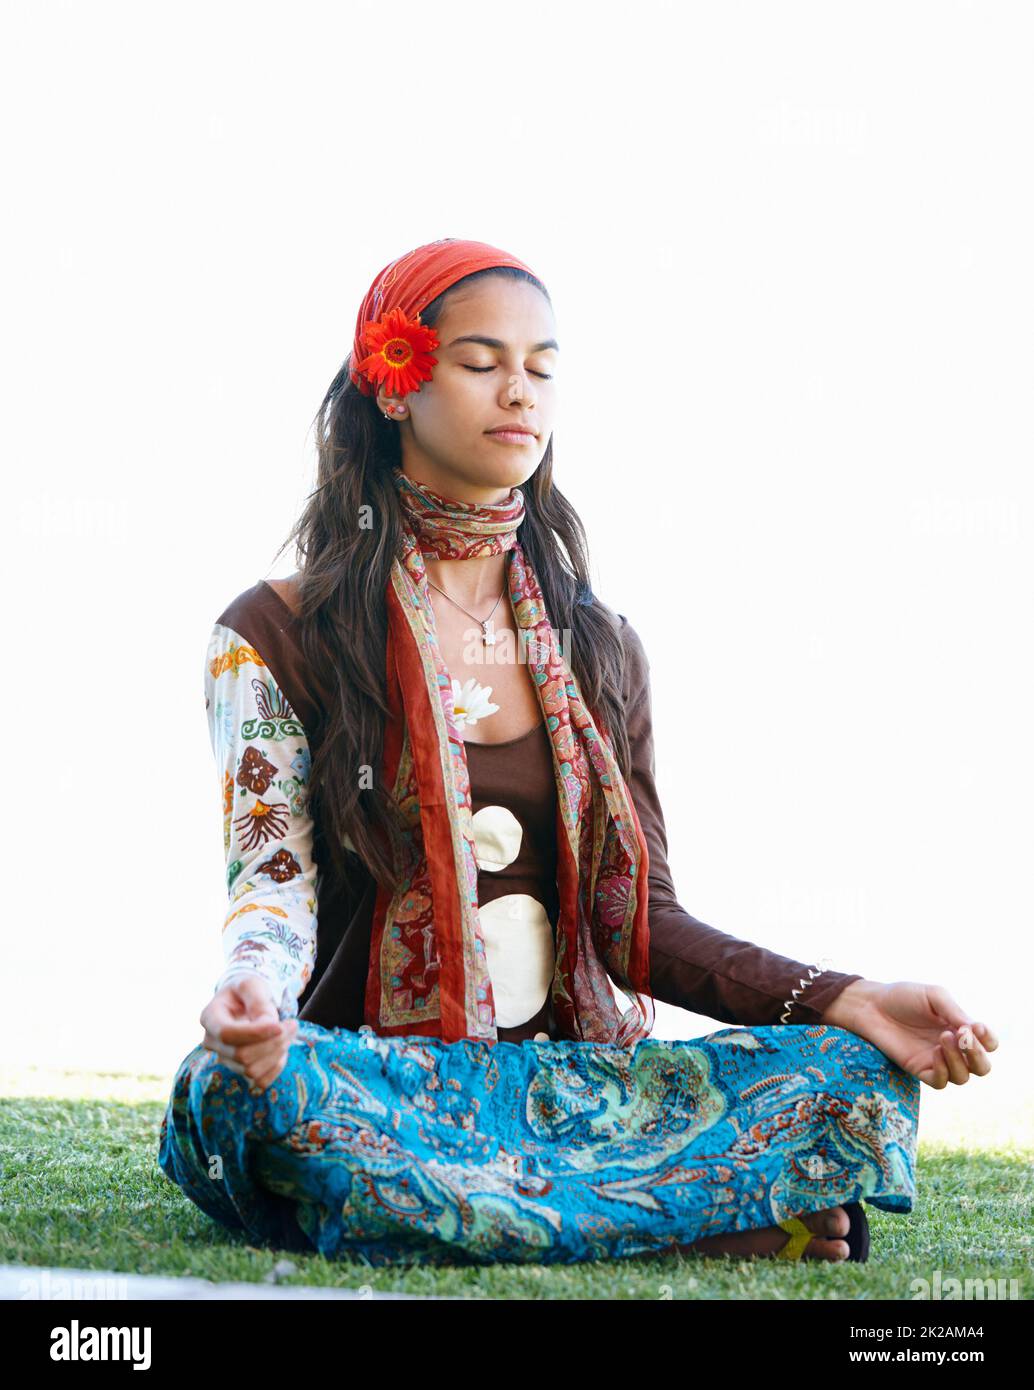 Entfesseln meines inneren buddha. Aufnahme einer jungen Hippie, die sich auf ihre Meditation konzentriert. Stockfoto